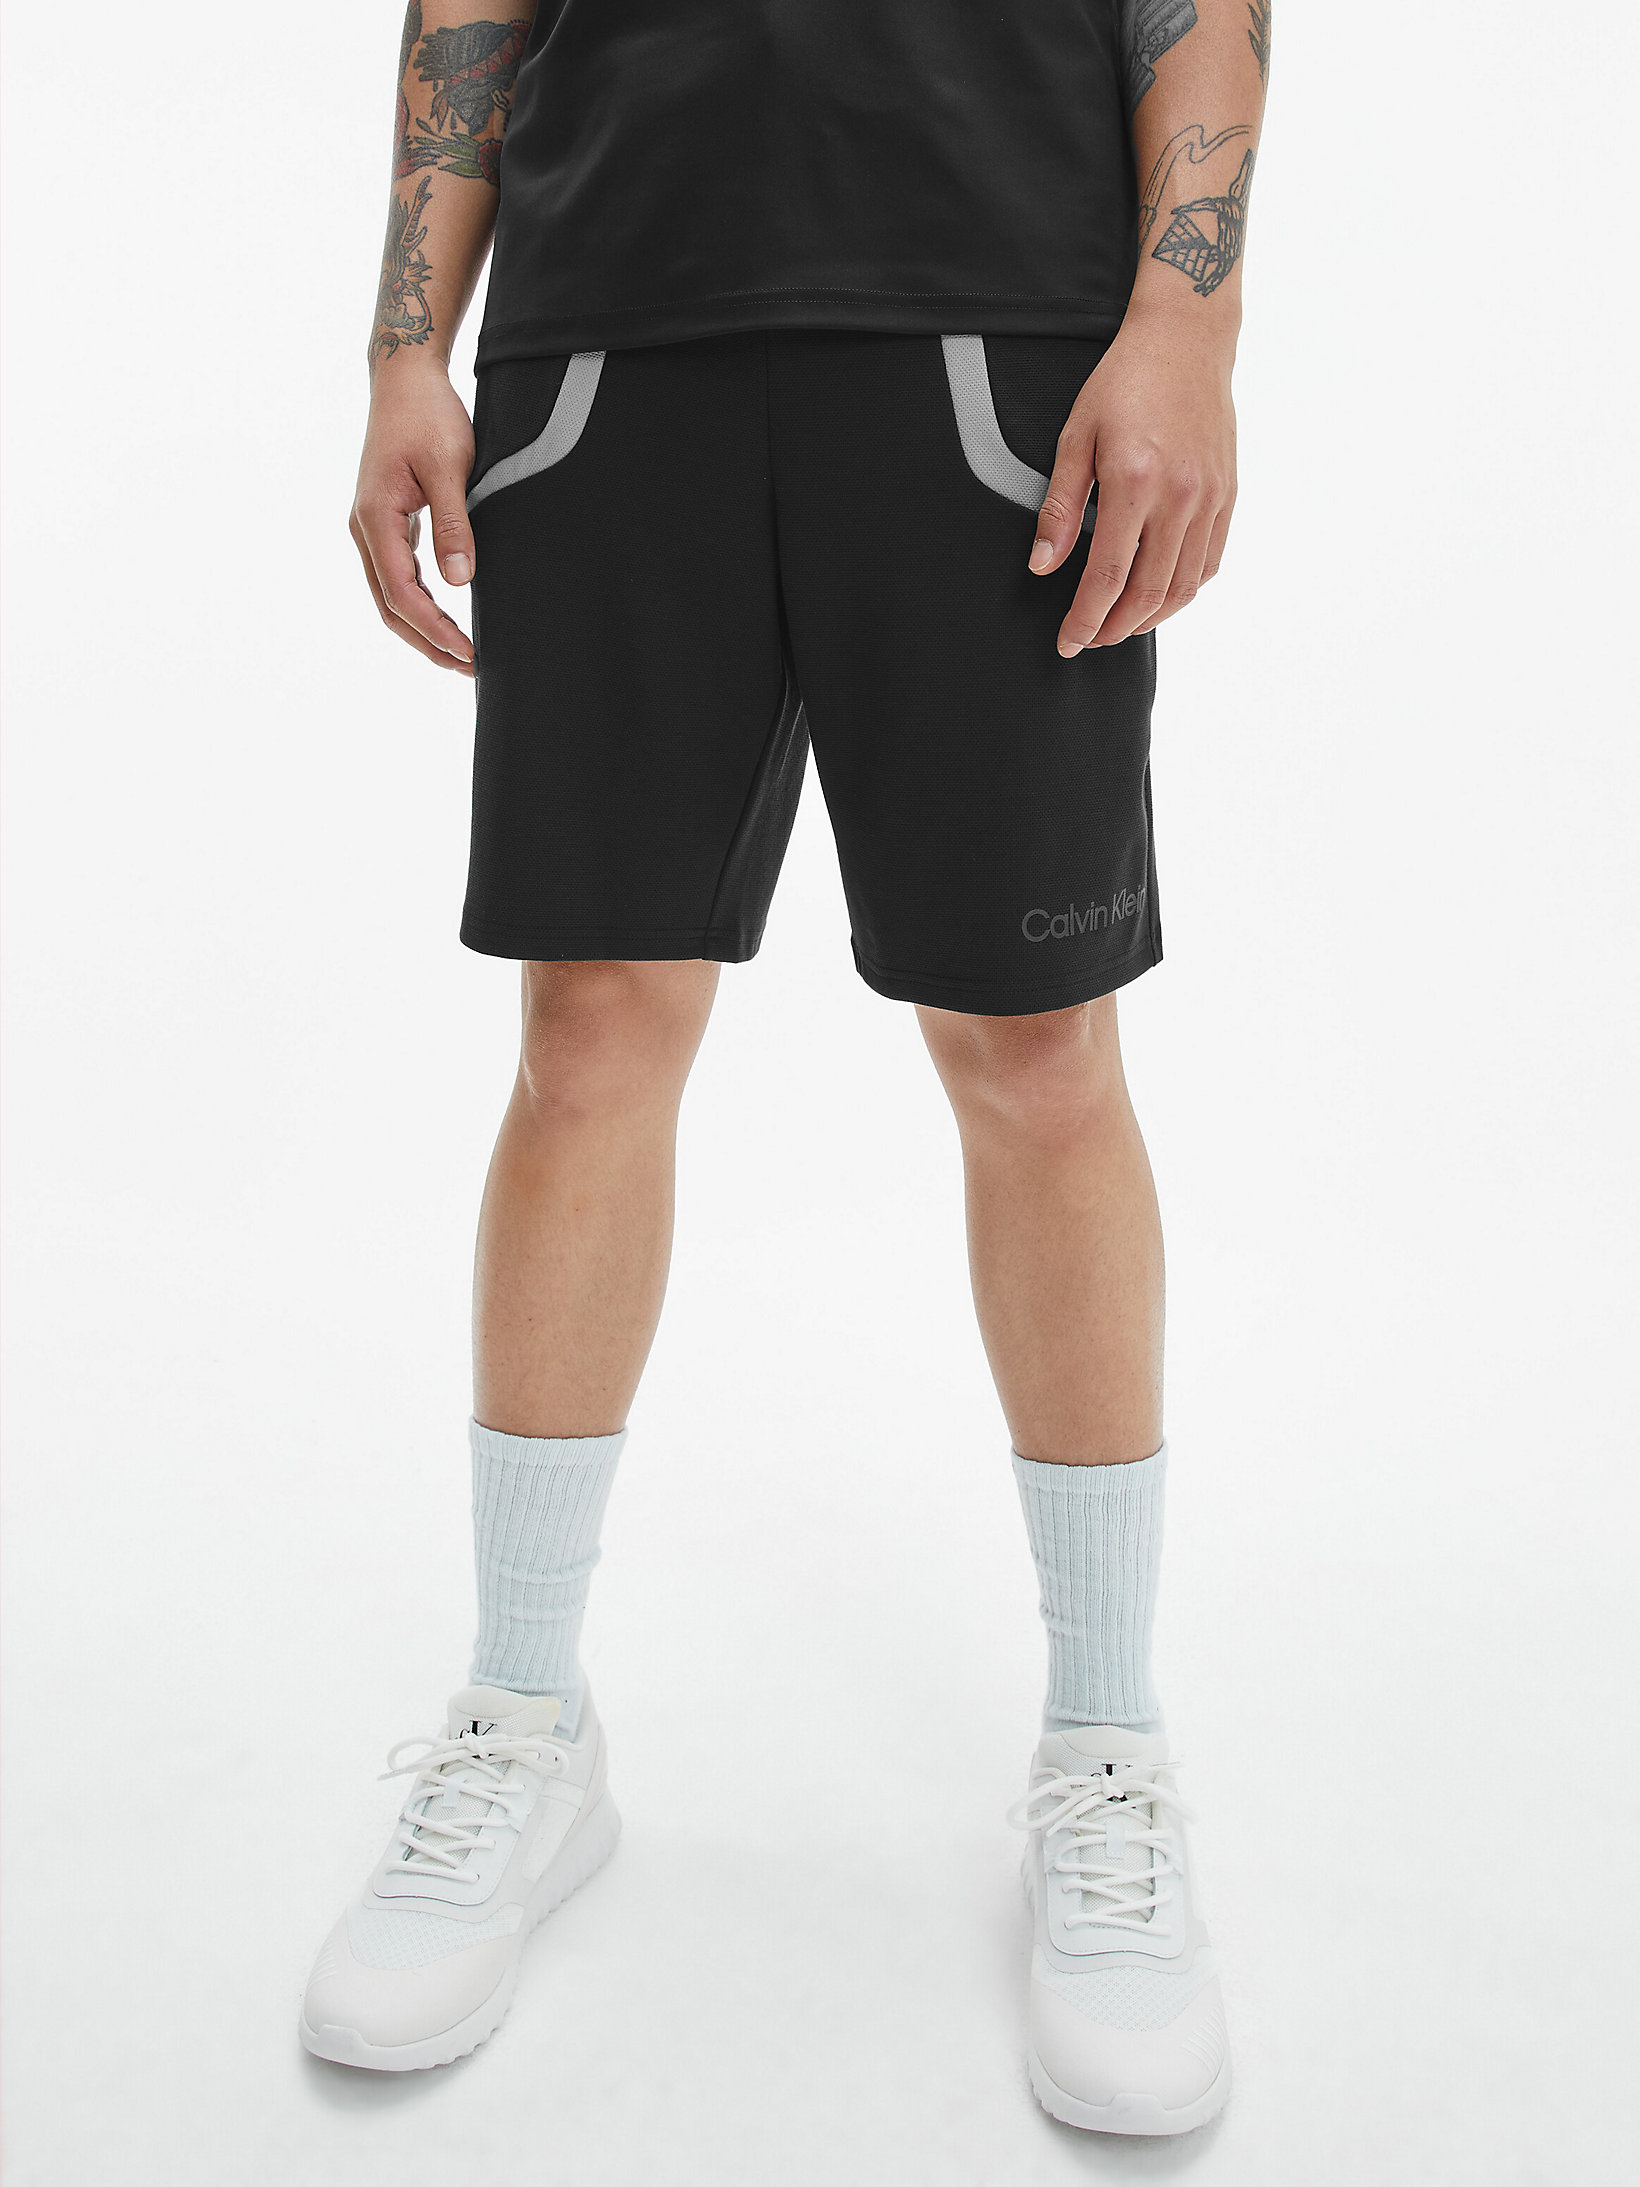 CK Black Gym Shorts undefined men Calvin Klein